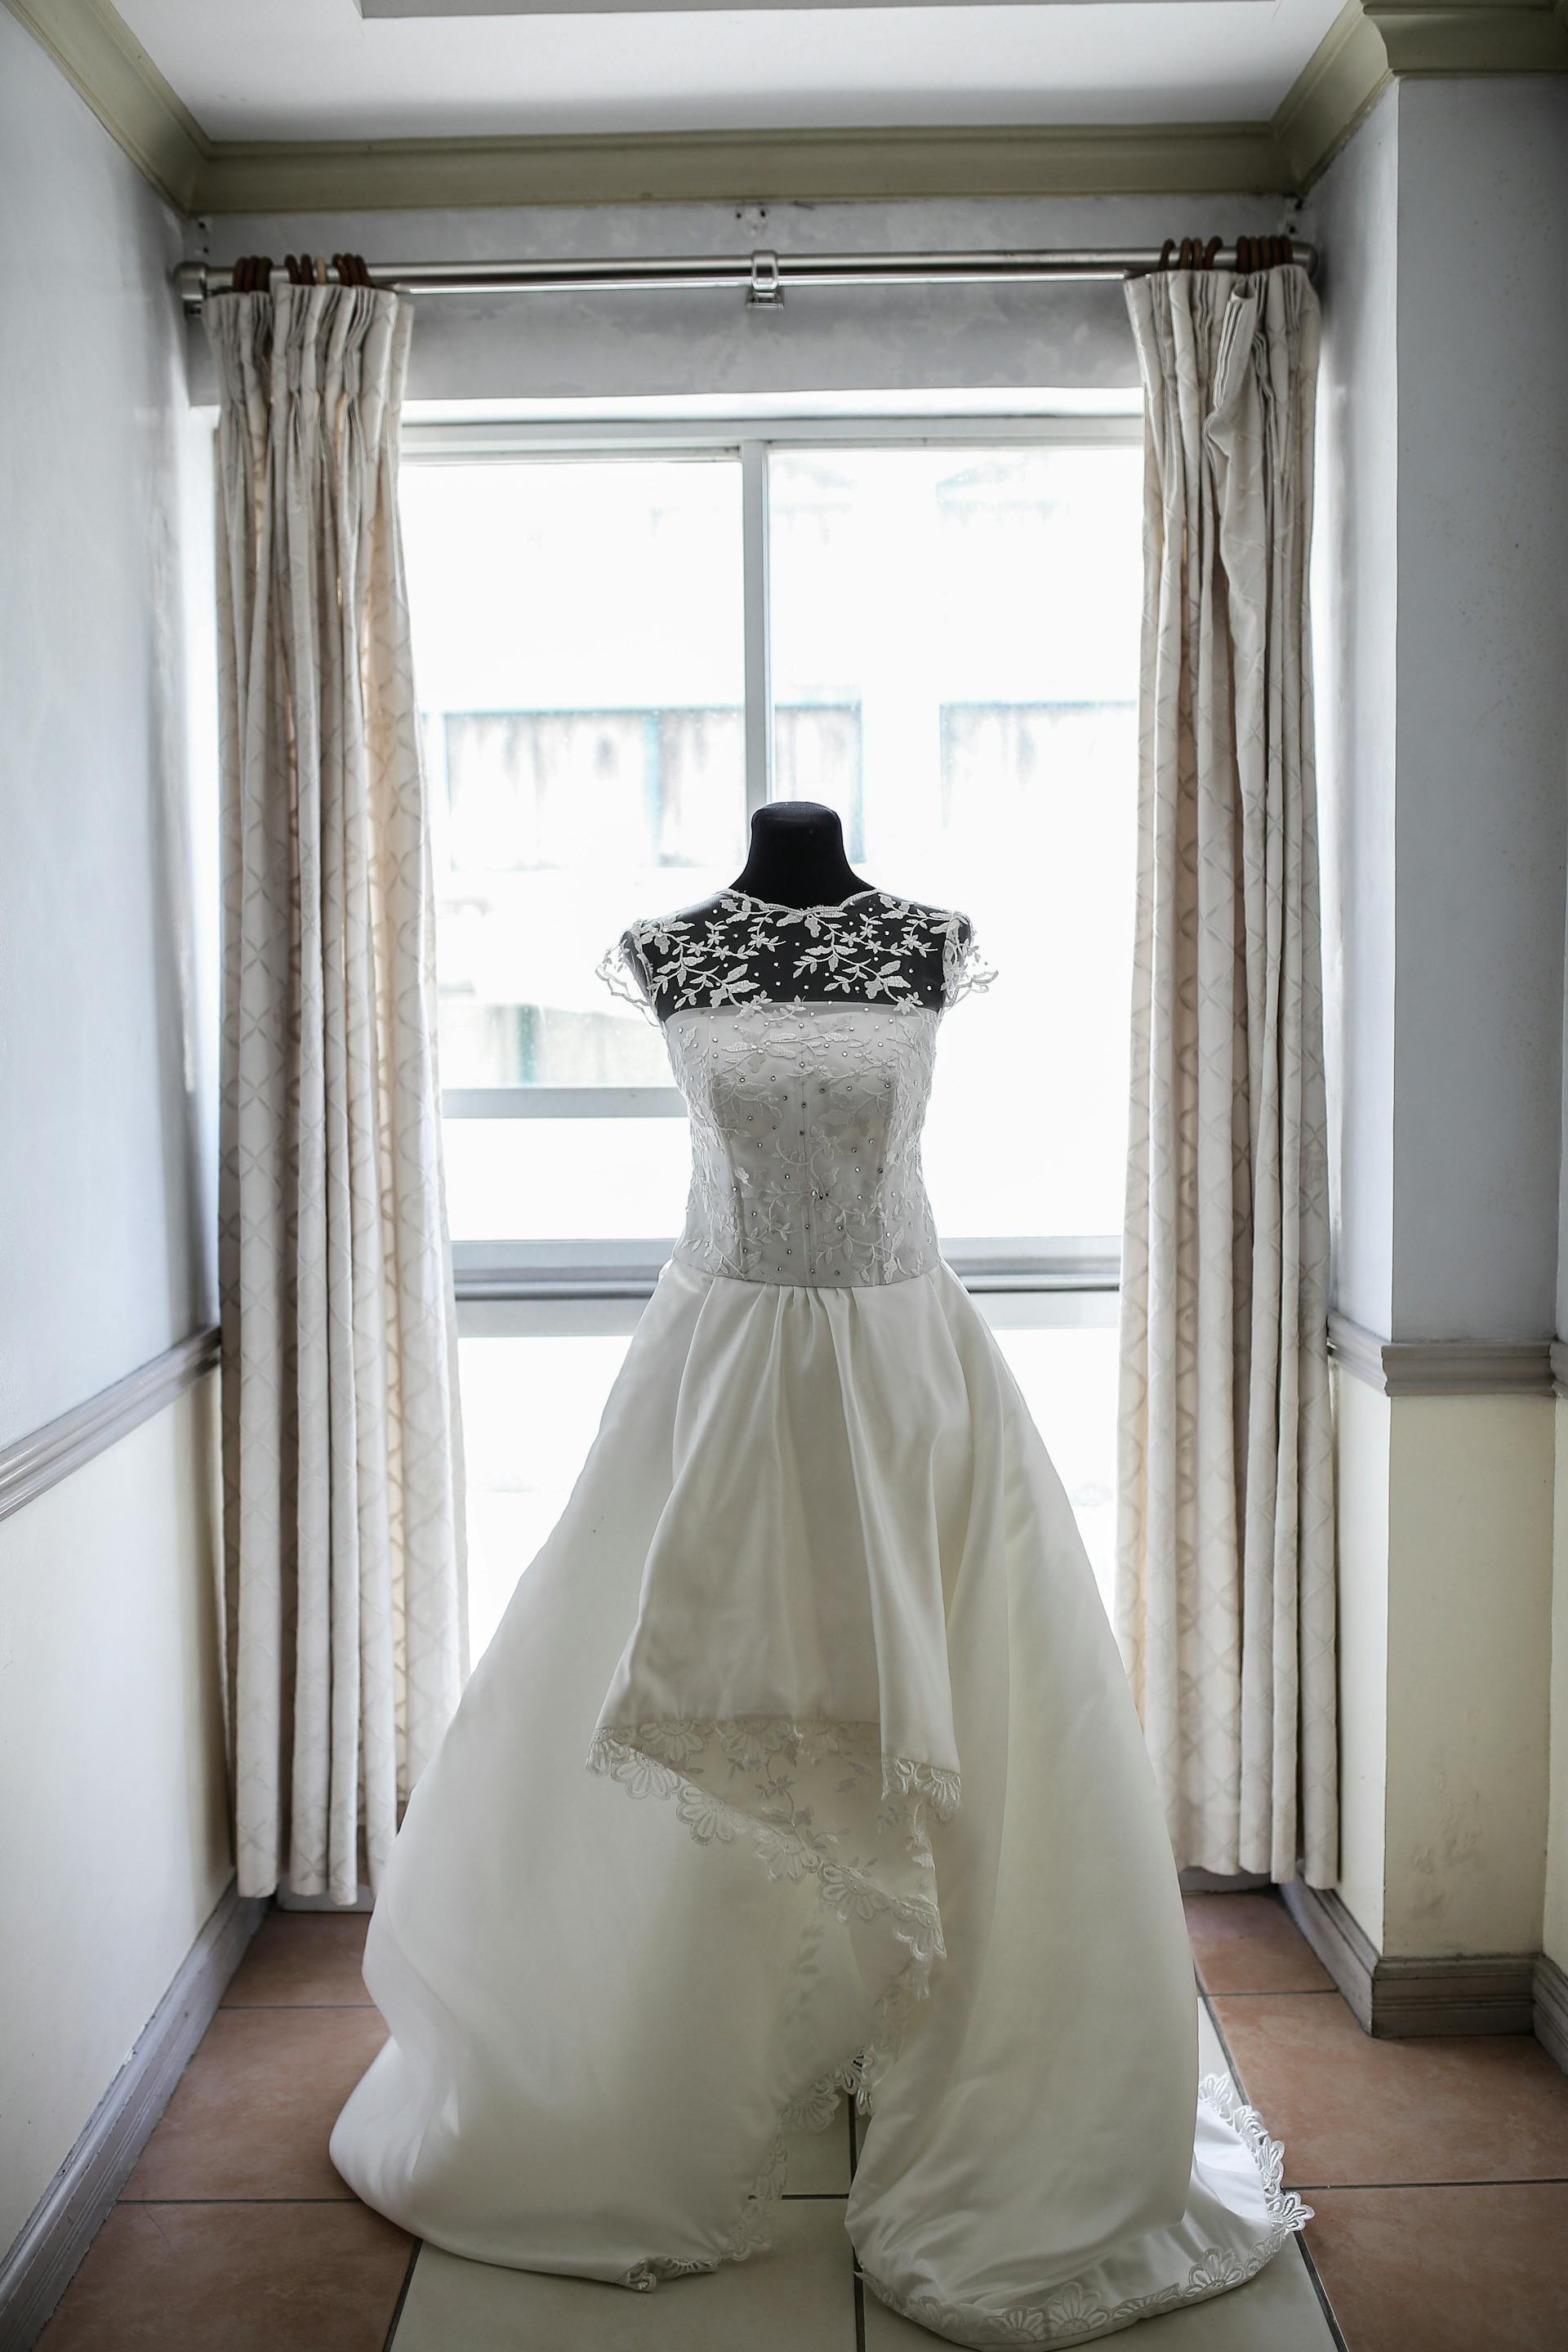 Une robe de mariée sur un mannequin | Source : Pexels